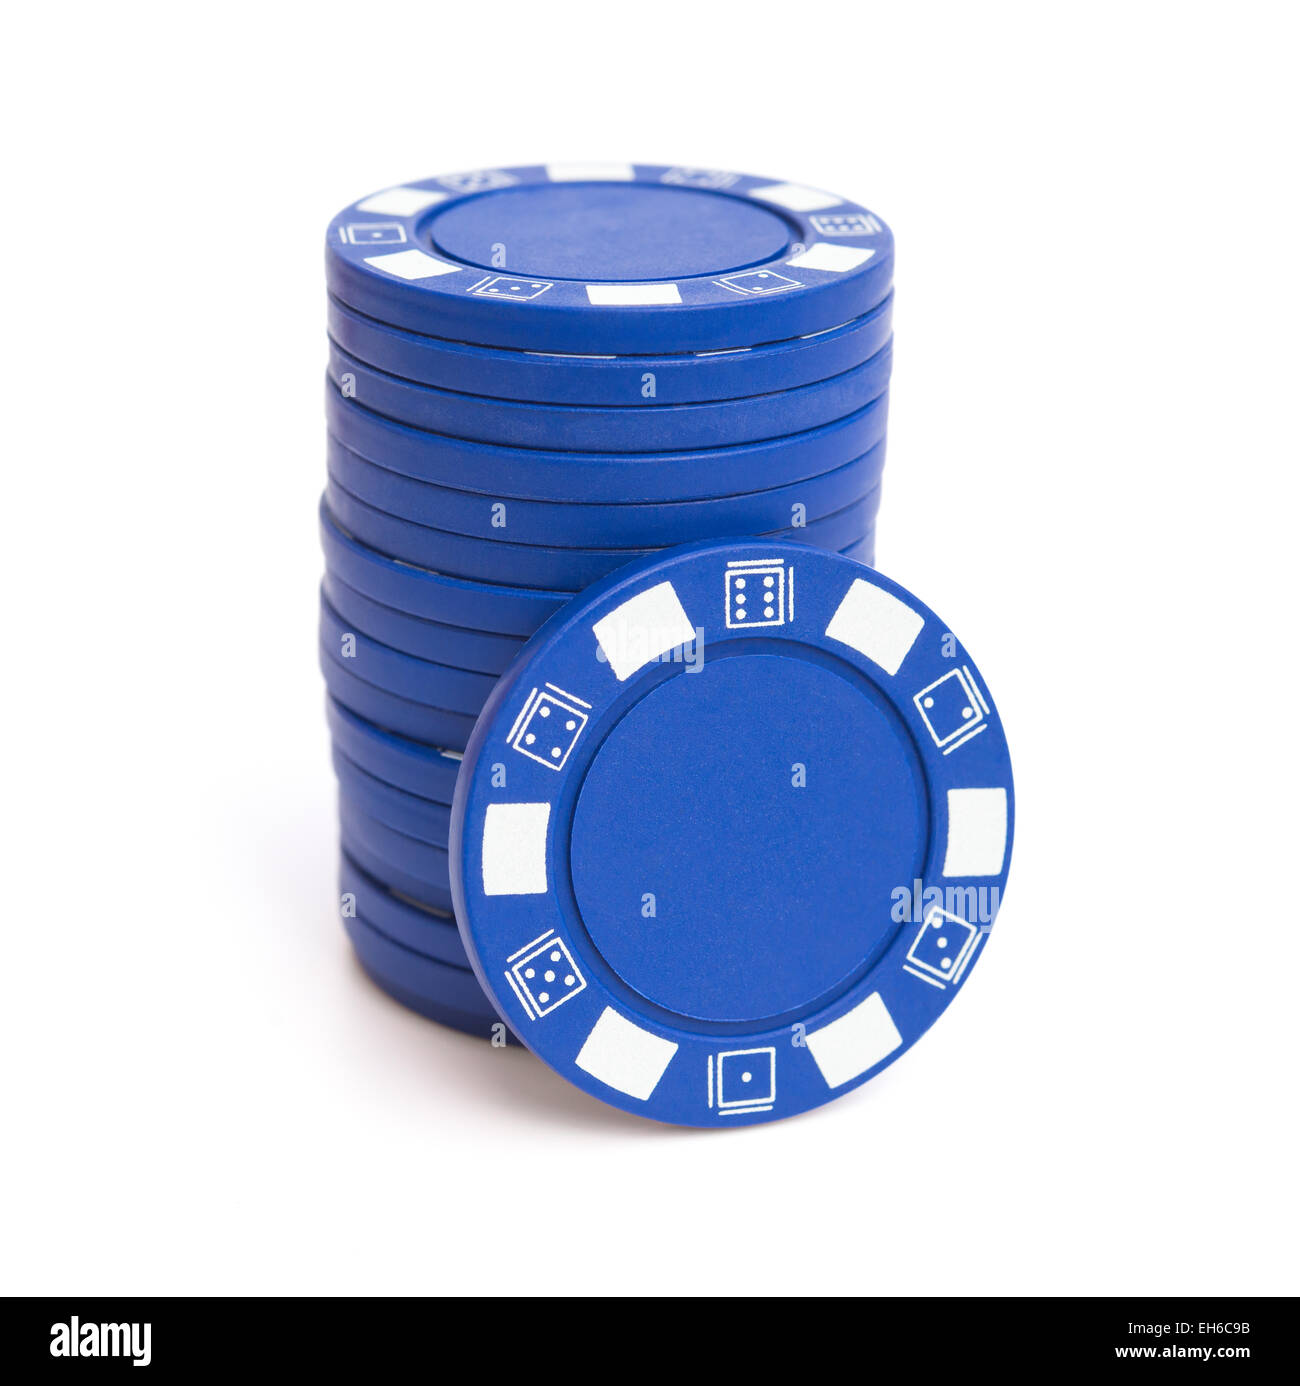 Fiches da poker blu immagini e fotografie stock ad alta risoluzione - Alamy